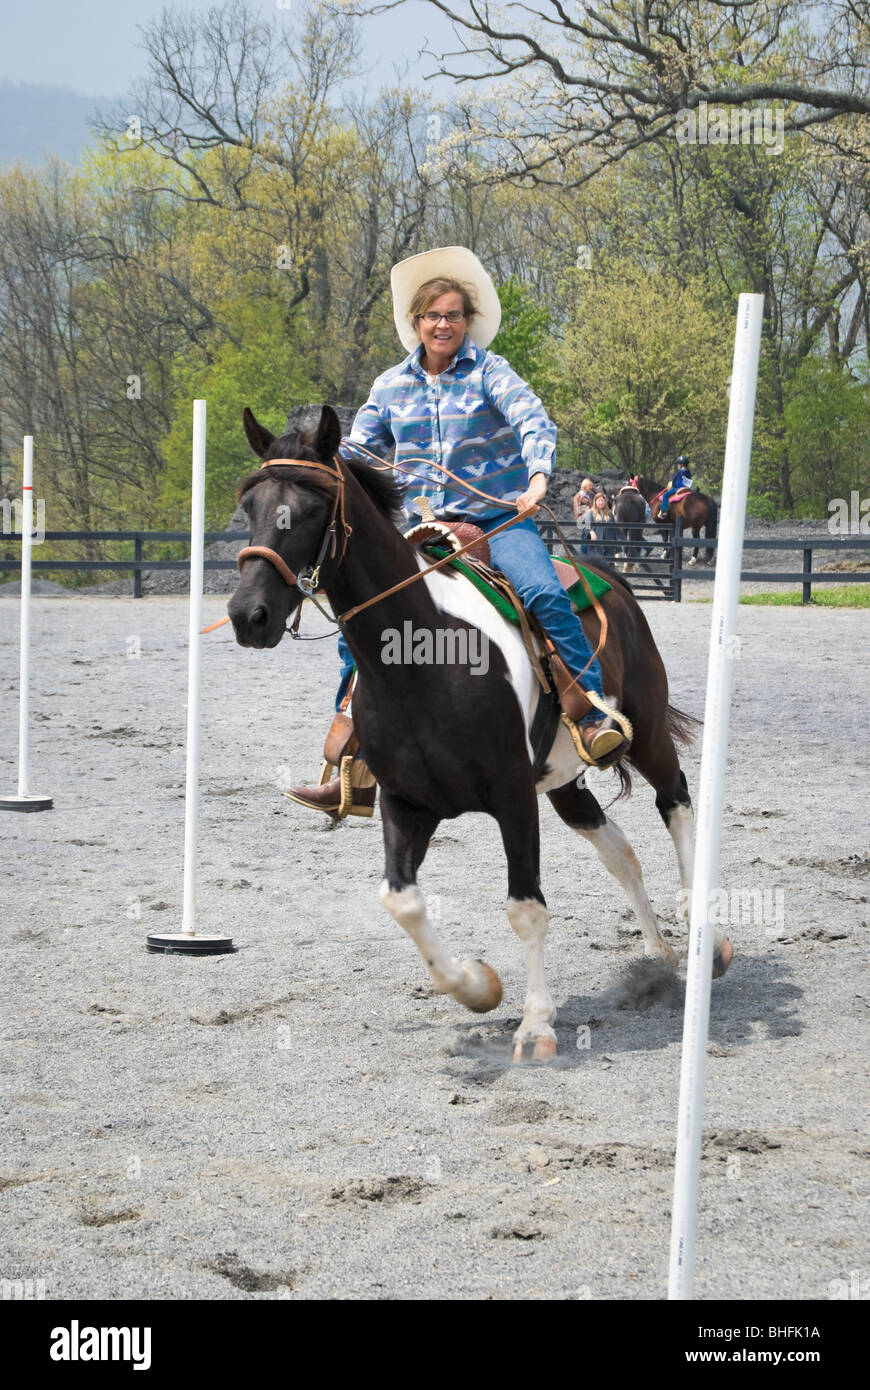 Glücklicher Fahrer, die Spaß am Malen Pferd durchläuft der Pole verbiegen Wettbewerb bei einem Show-Event. Stockfoto